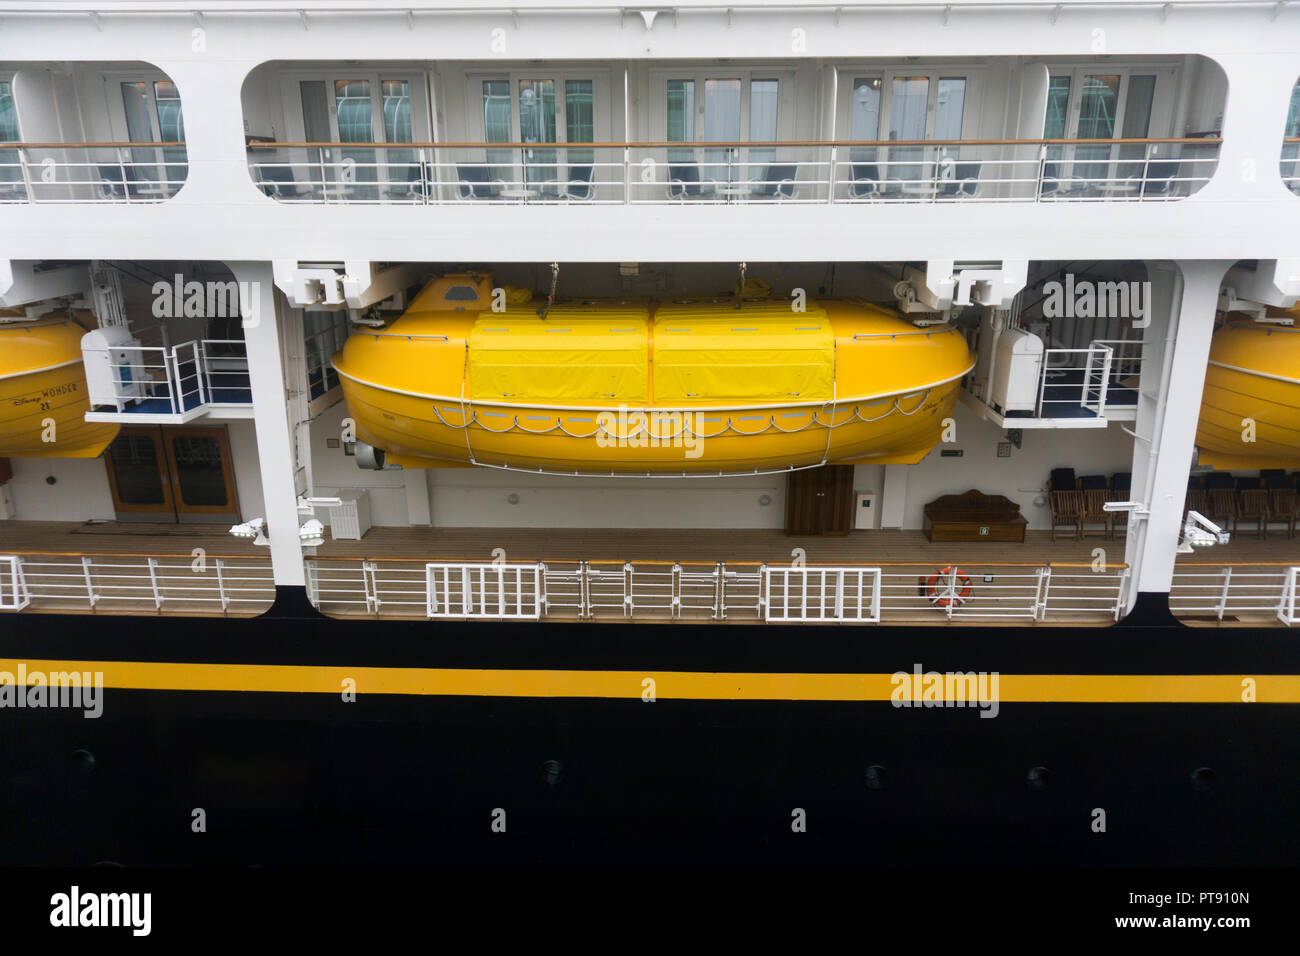 VANCOUVER, Canada - 10 settembre 2018: Disney meraviglia la nave di crociera. Disney la meraviglia è uno dei quattro Disney Cruise navi della flotta. Foto Stock